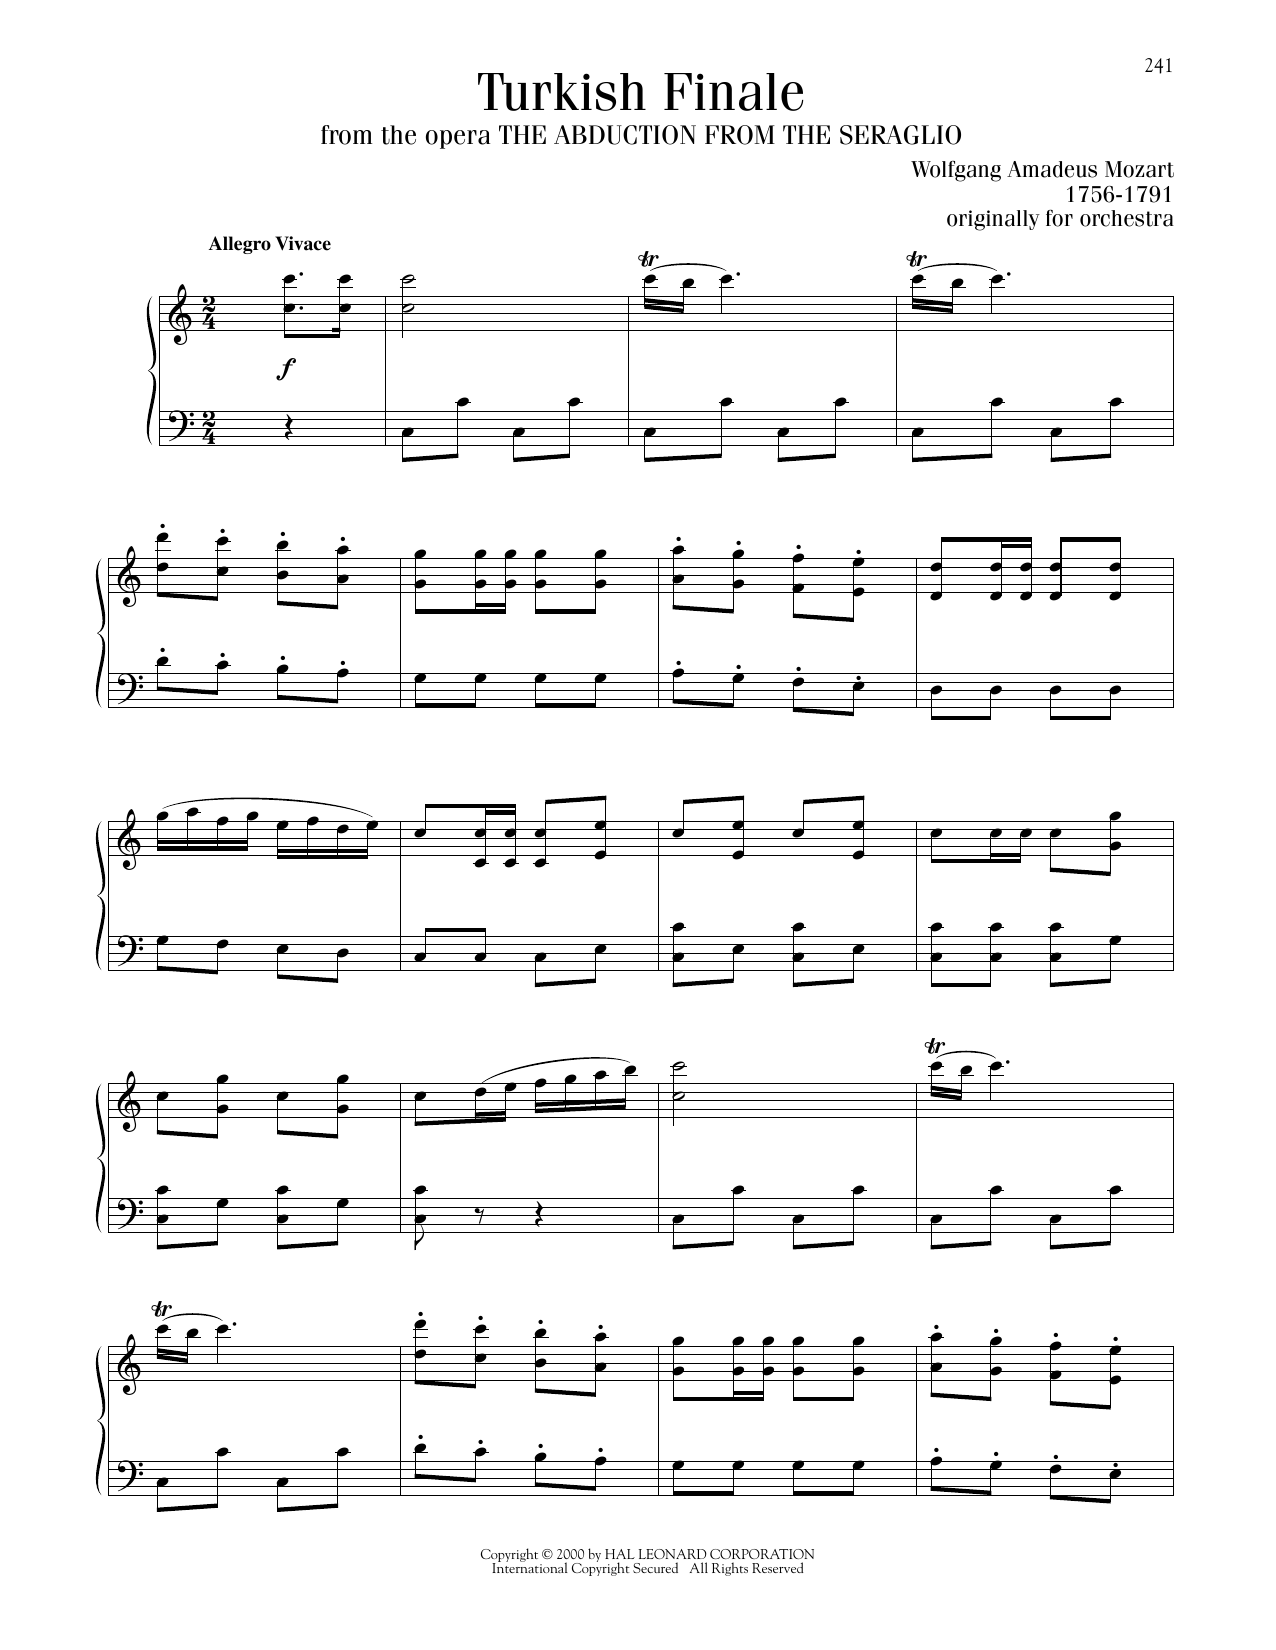 Wolfgang Amadeus Mozart Turkish Finale sheet music notes printable PDF score